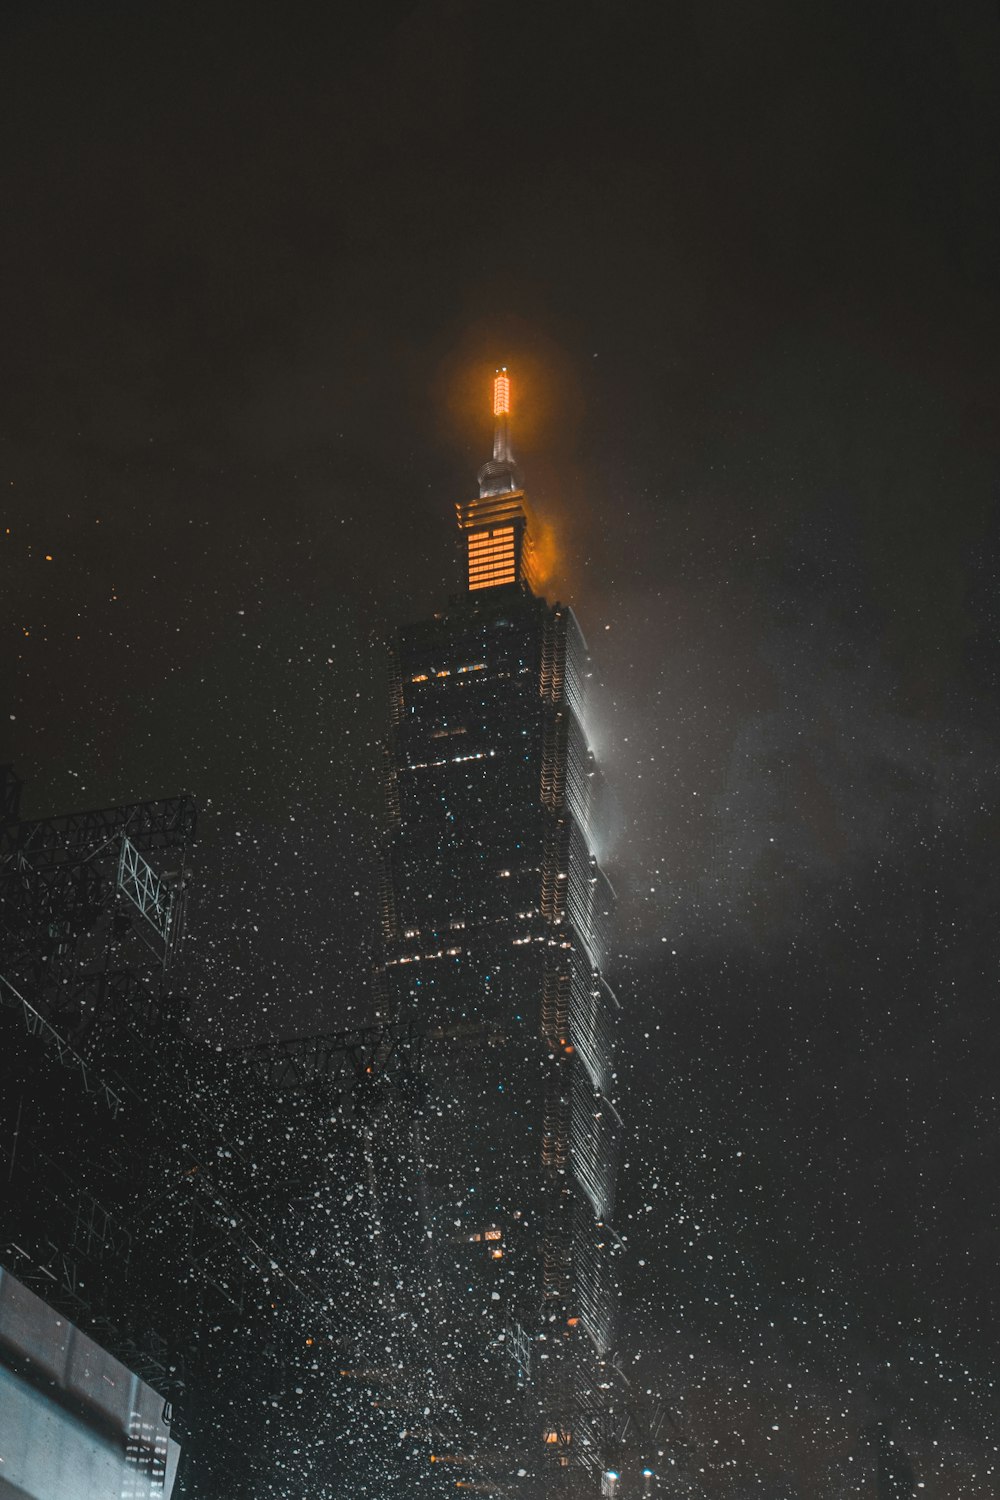 Feu d’artifice au-dessus d’un immeuble de grande hauteur pendant la nuit